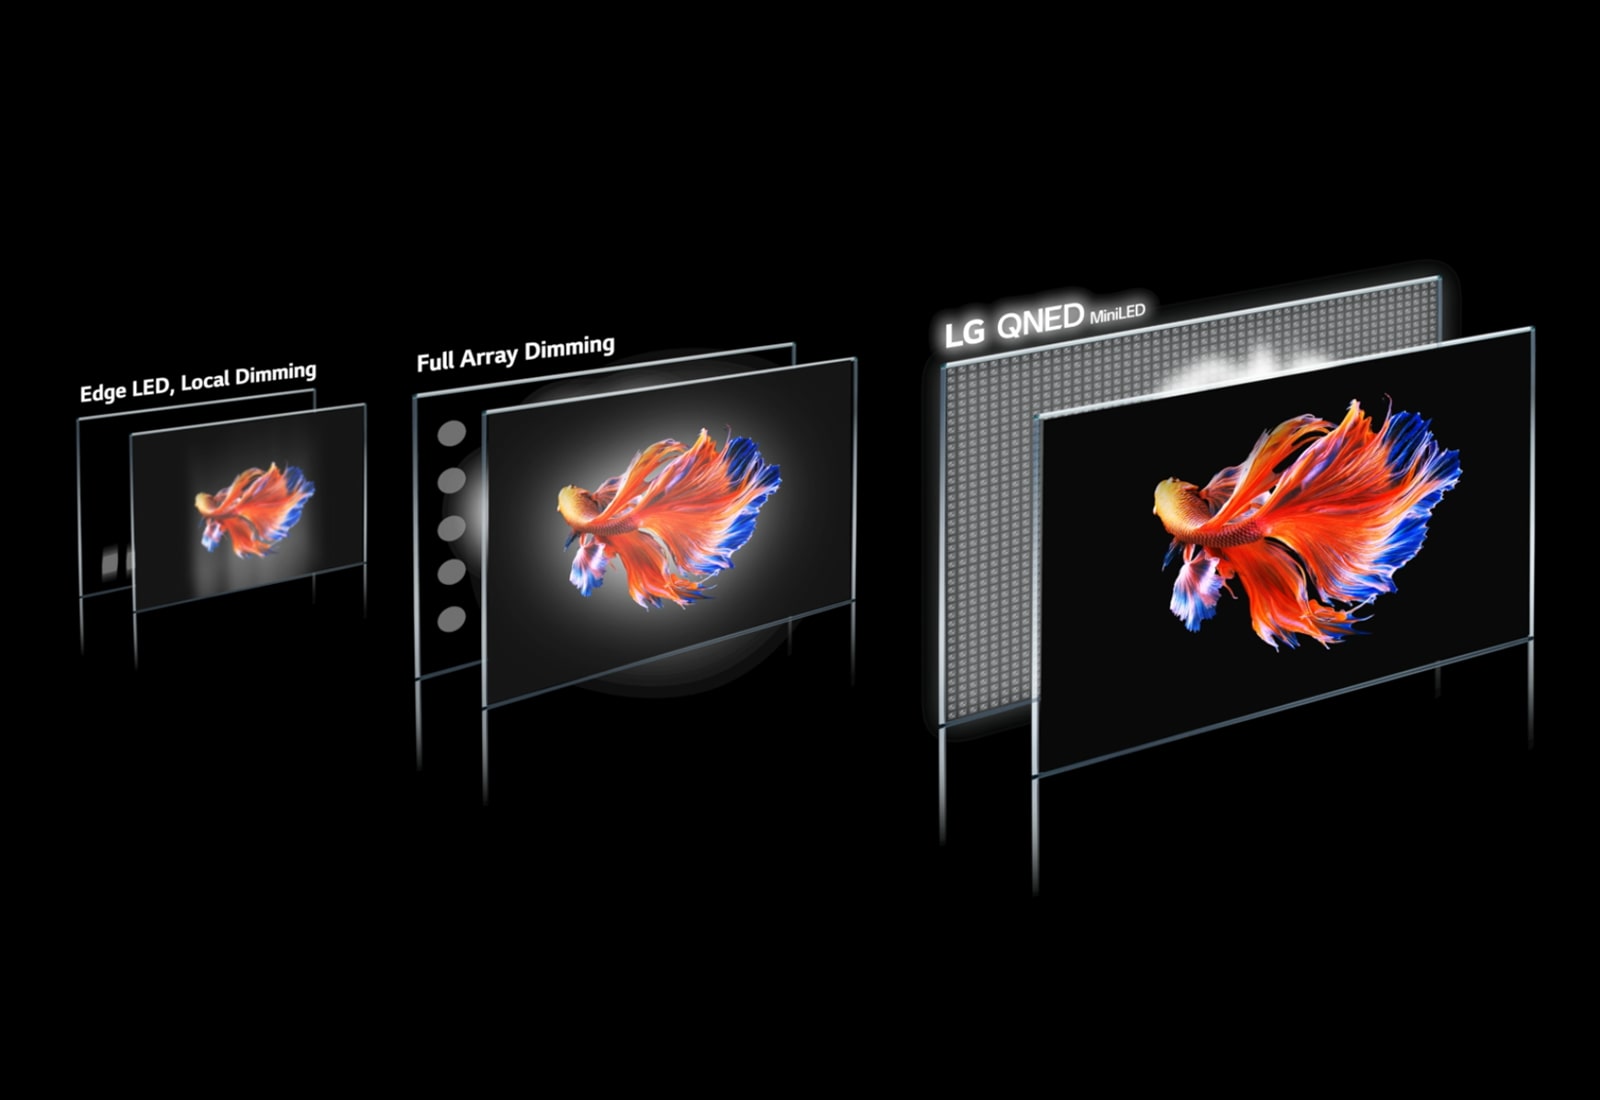 תמונה של טכנולוגיית אזור עמעום ודג קרב סיאמי על רקע שחור בשלושה מסכים שונים. LG QNED Mini LED מציגה את התמונה הבהירה ביותר, עם פחות הילה ועם צבעים בהירים יותר (הפעילו את הסרטון).